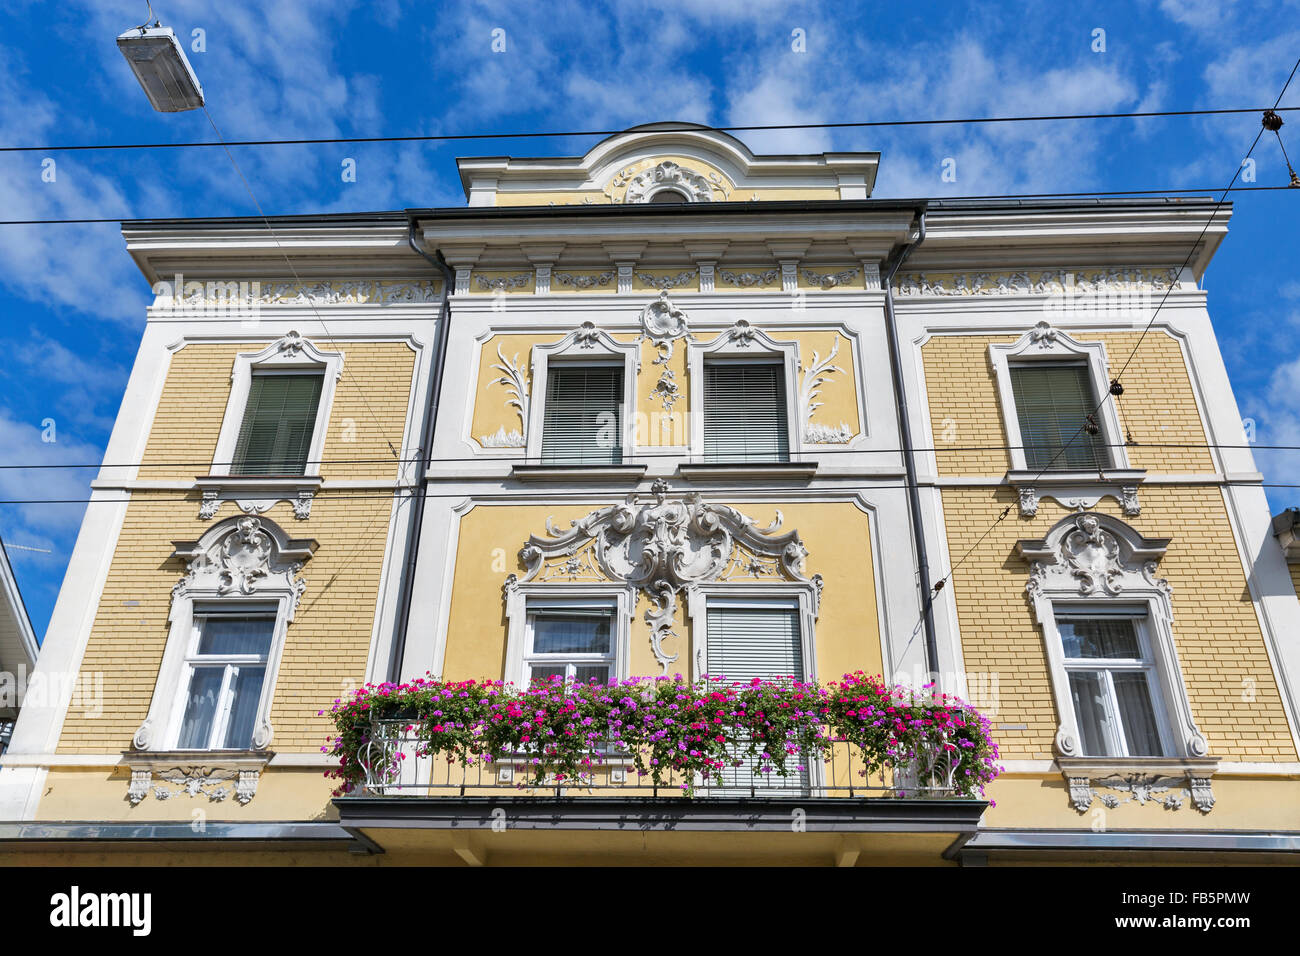 Vieille ville de Salzbourg la façade de l'immeuble avec balcon, fleurs et bas-relief. L'Autriche Banque D'Images